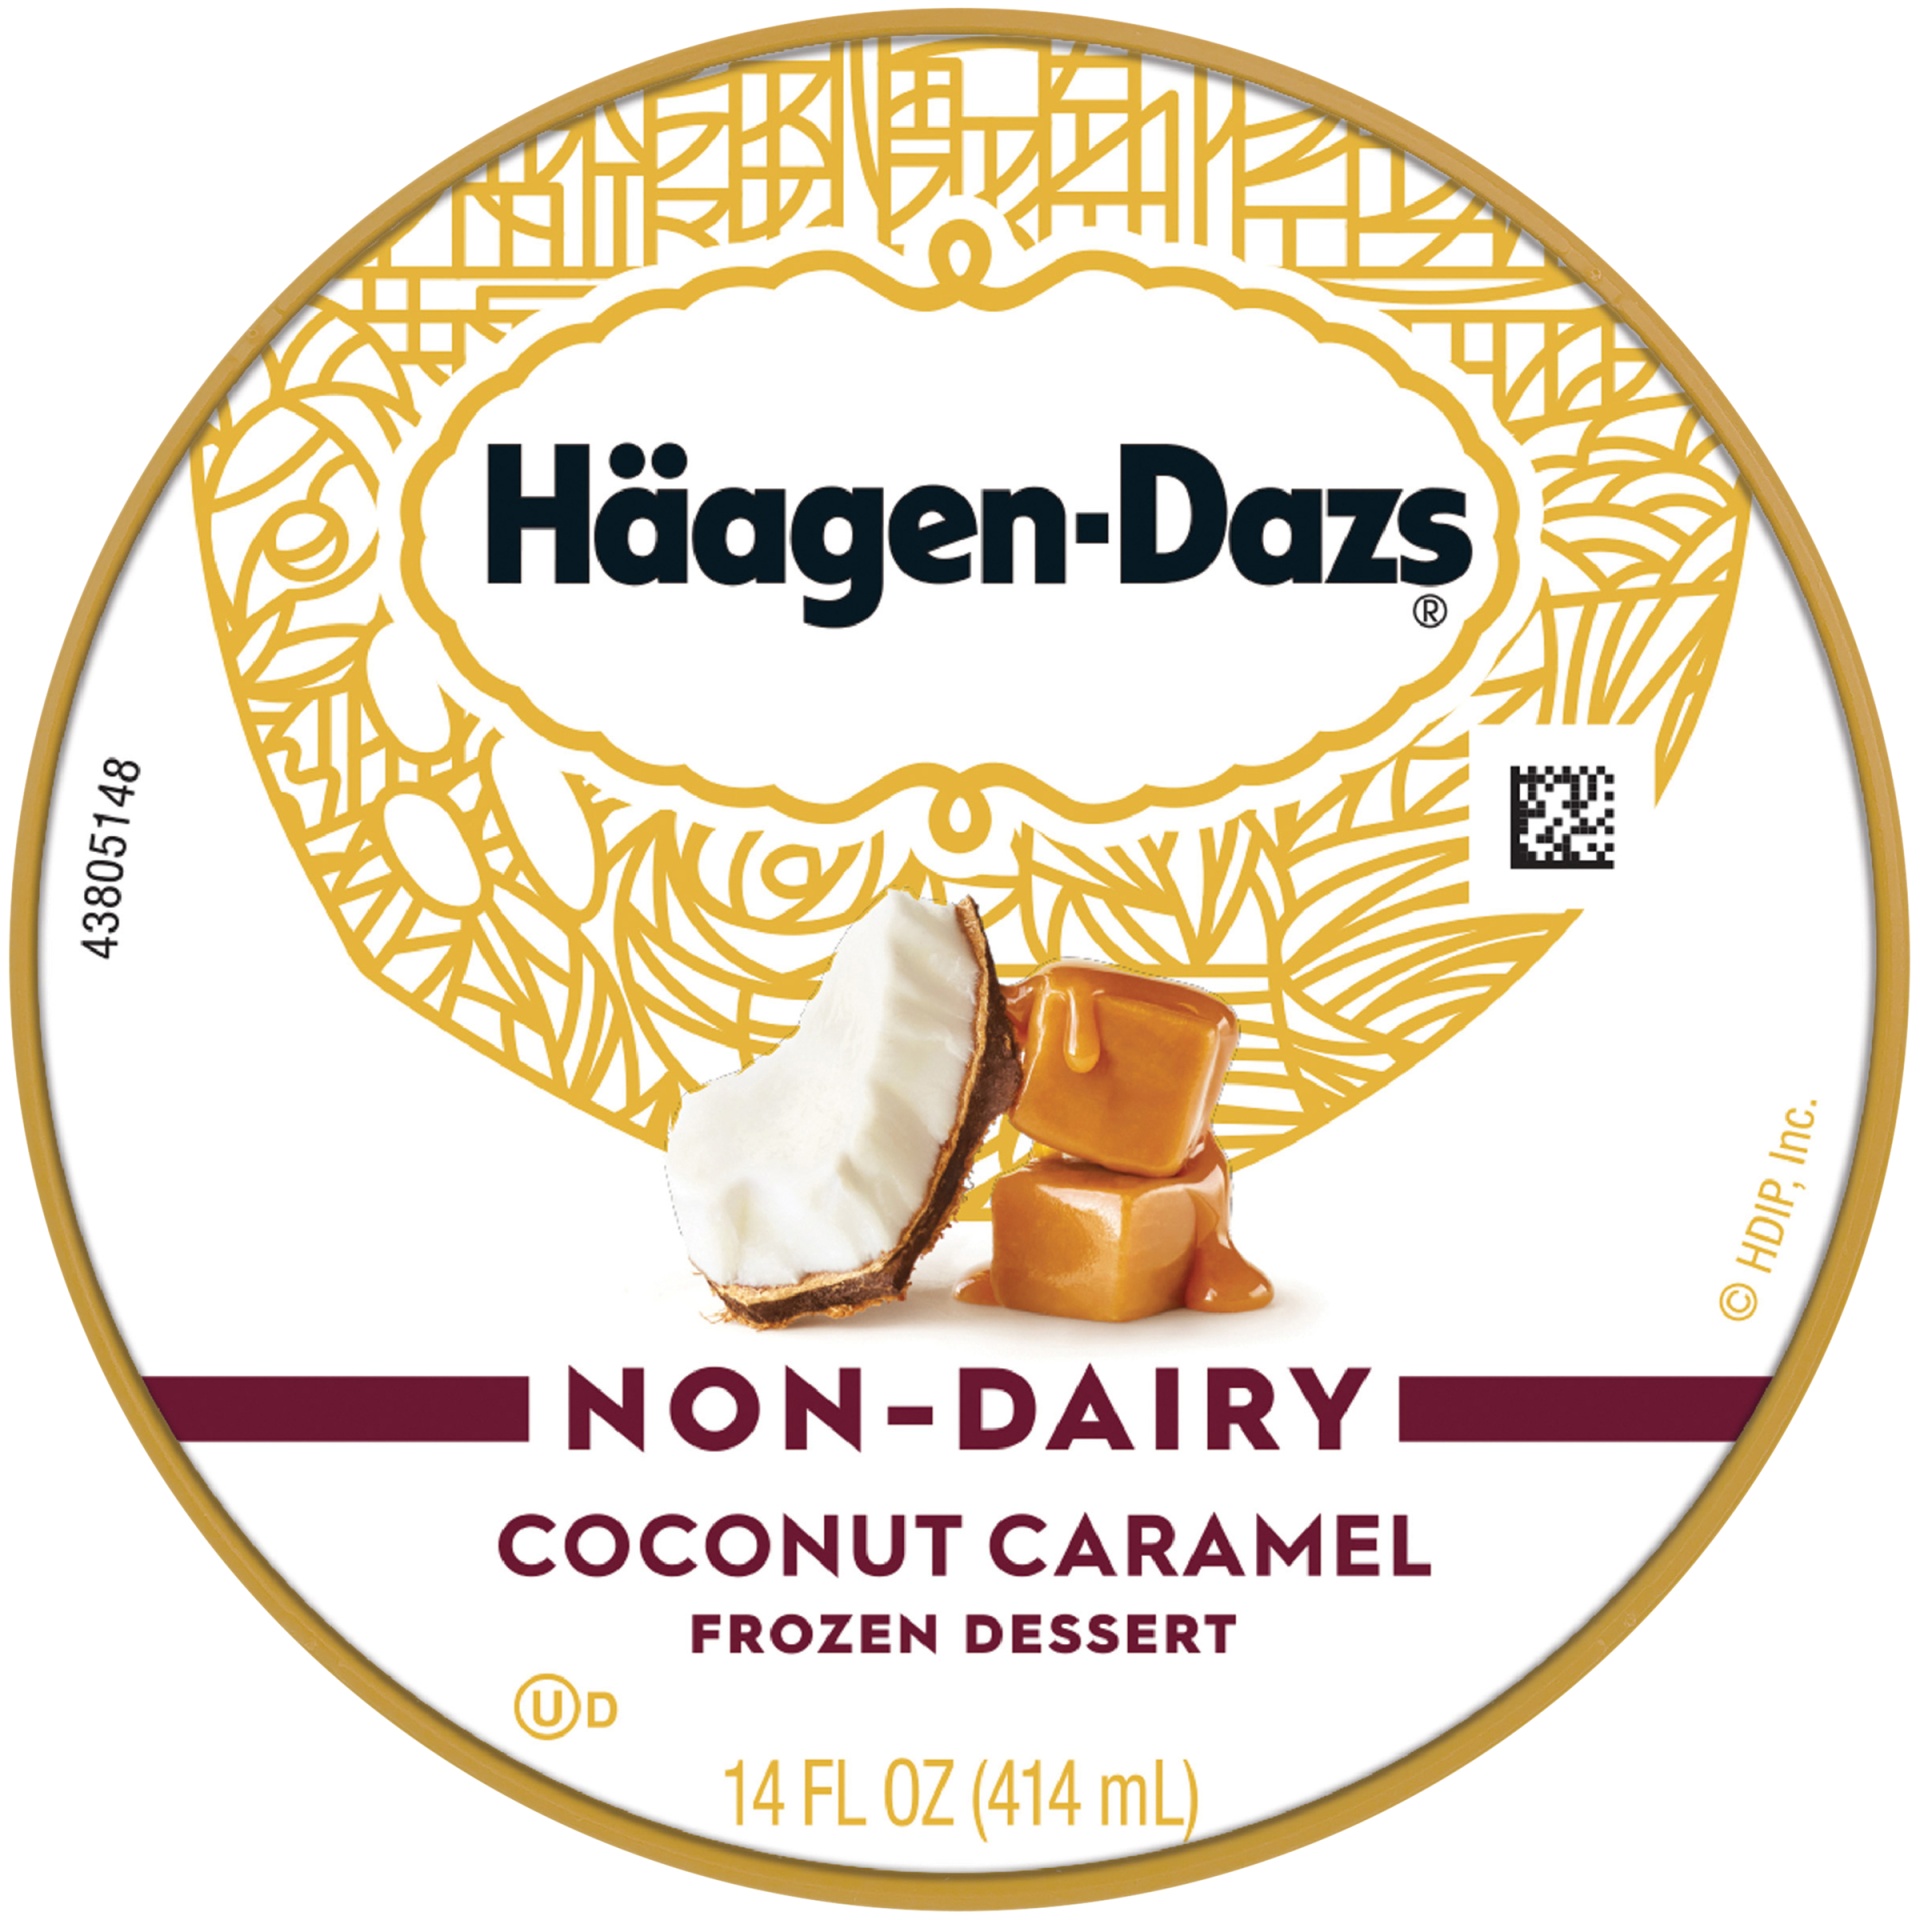 slide 5 of 7, Haagen-Dazs Non-Dairy Coconut Caramel Frozen Dessert, 14 fl oz